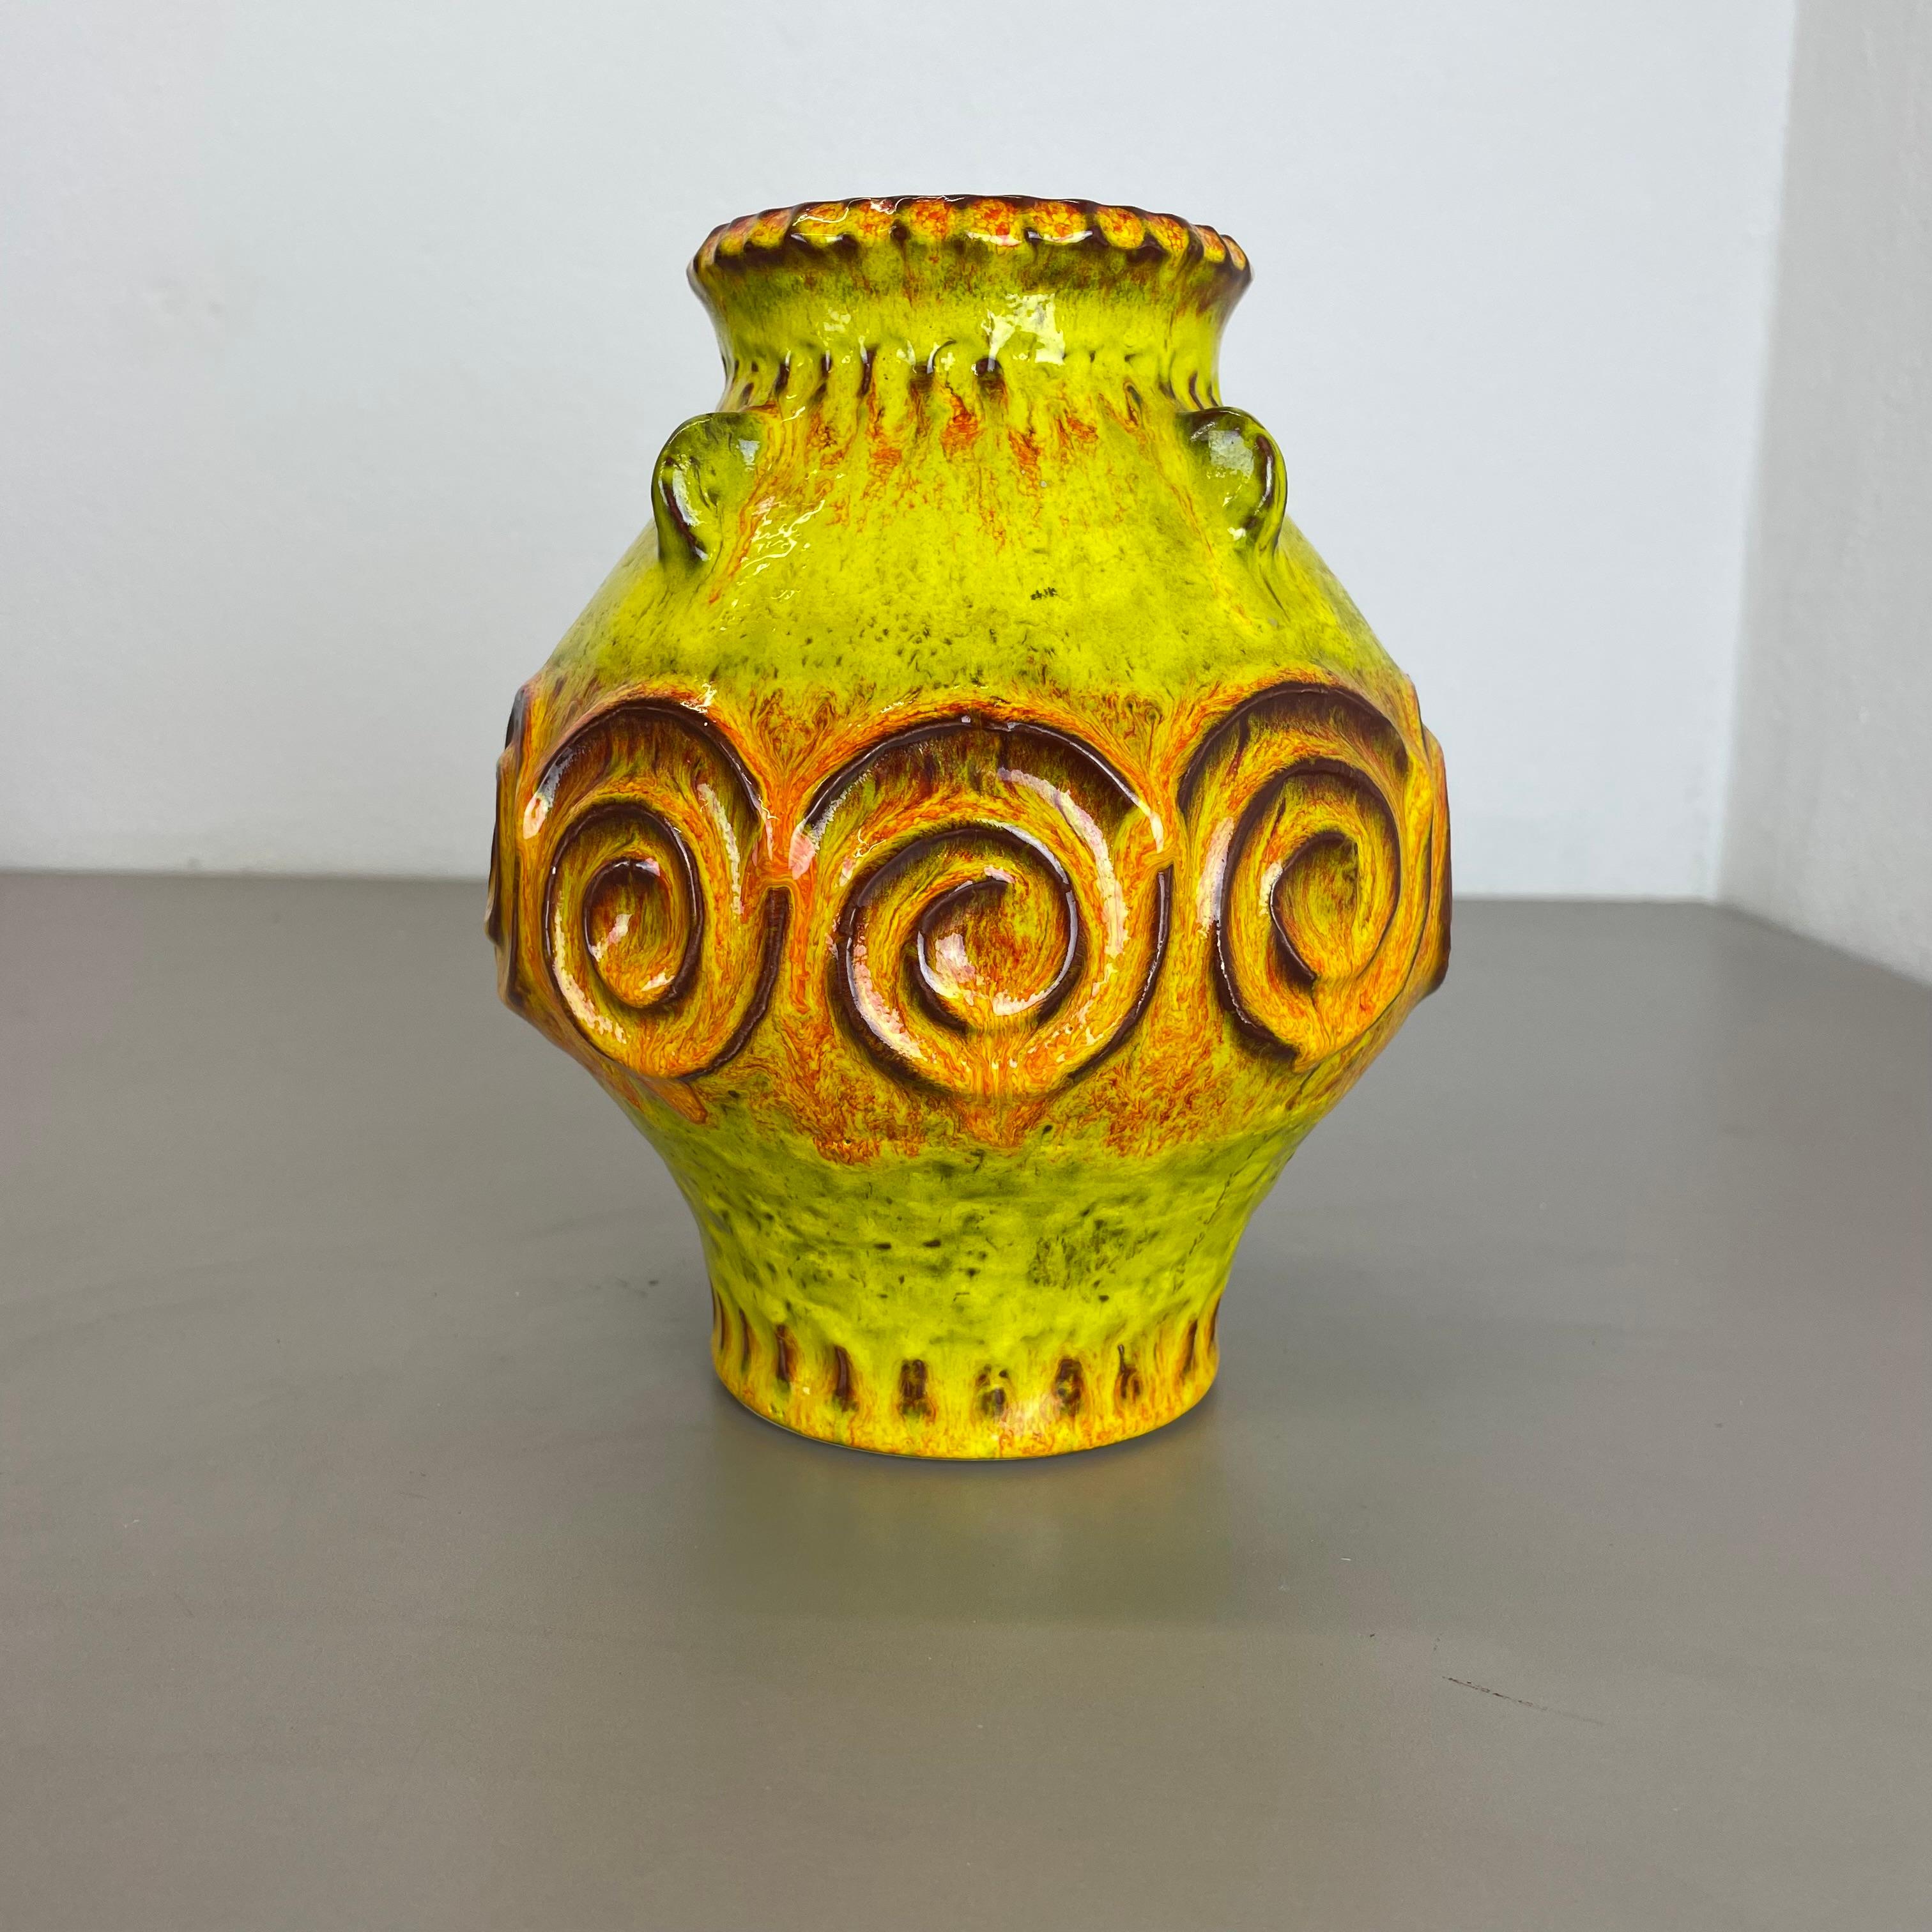 Article :

Vase en céramique


Producteur :

Jasba Ceramic, Allemagne



Décennie :

1970s




Vase original en céramique des années 1970, fabriqué en Allemagne. Production allemande de haute qualité avec une belle illustration abstraite en jaune et